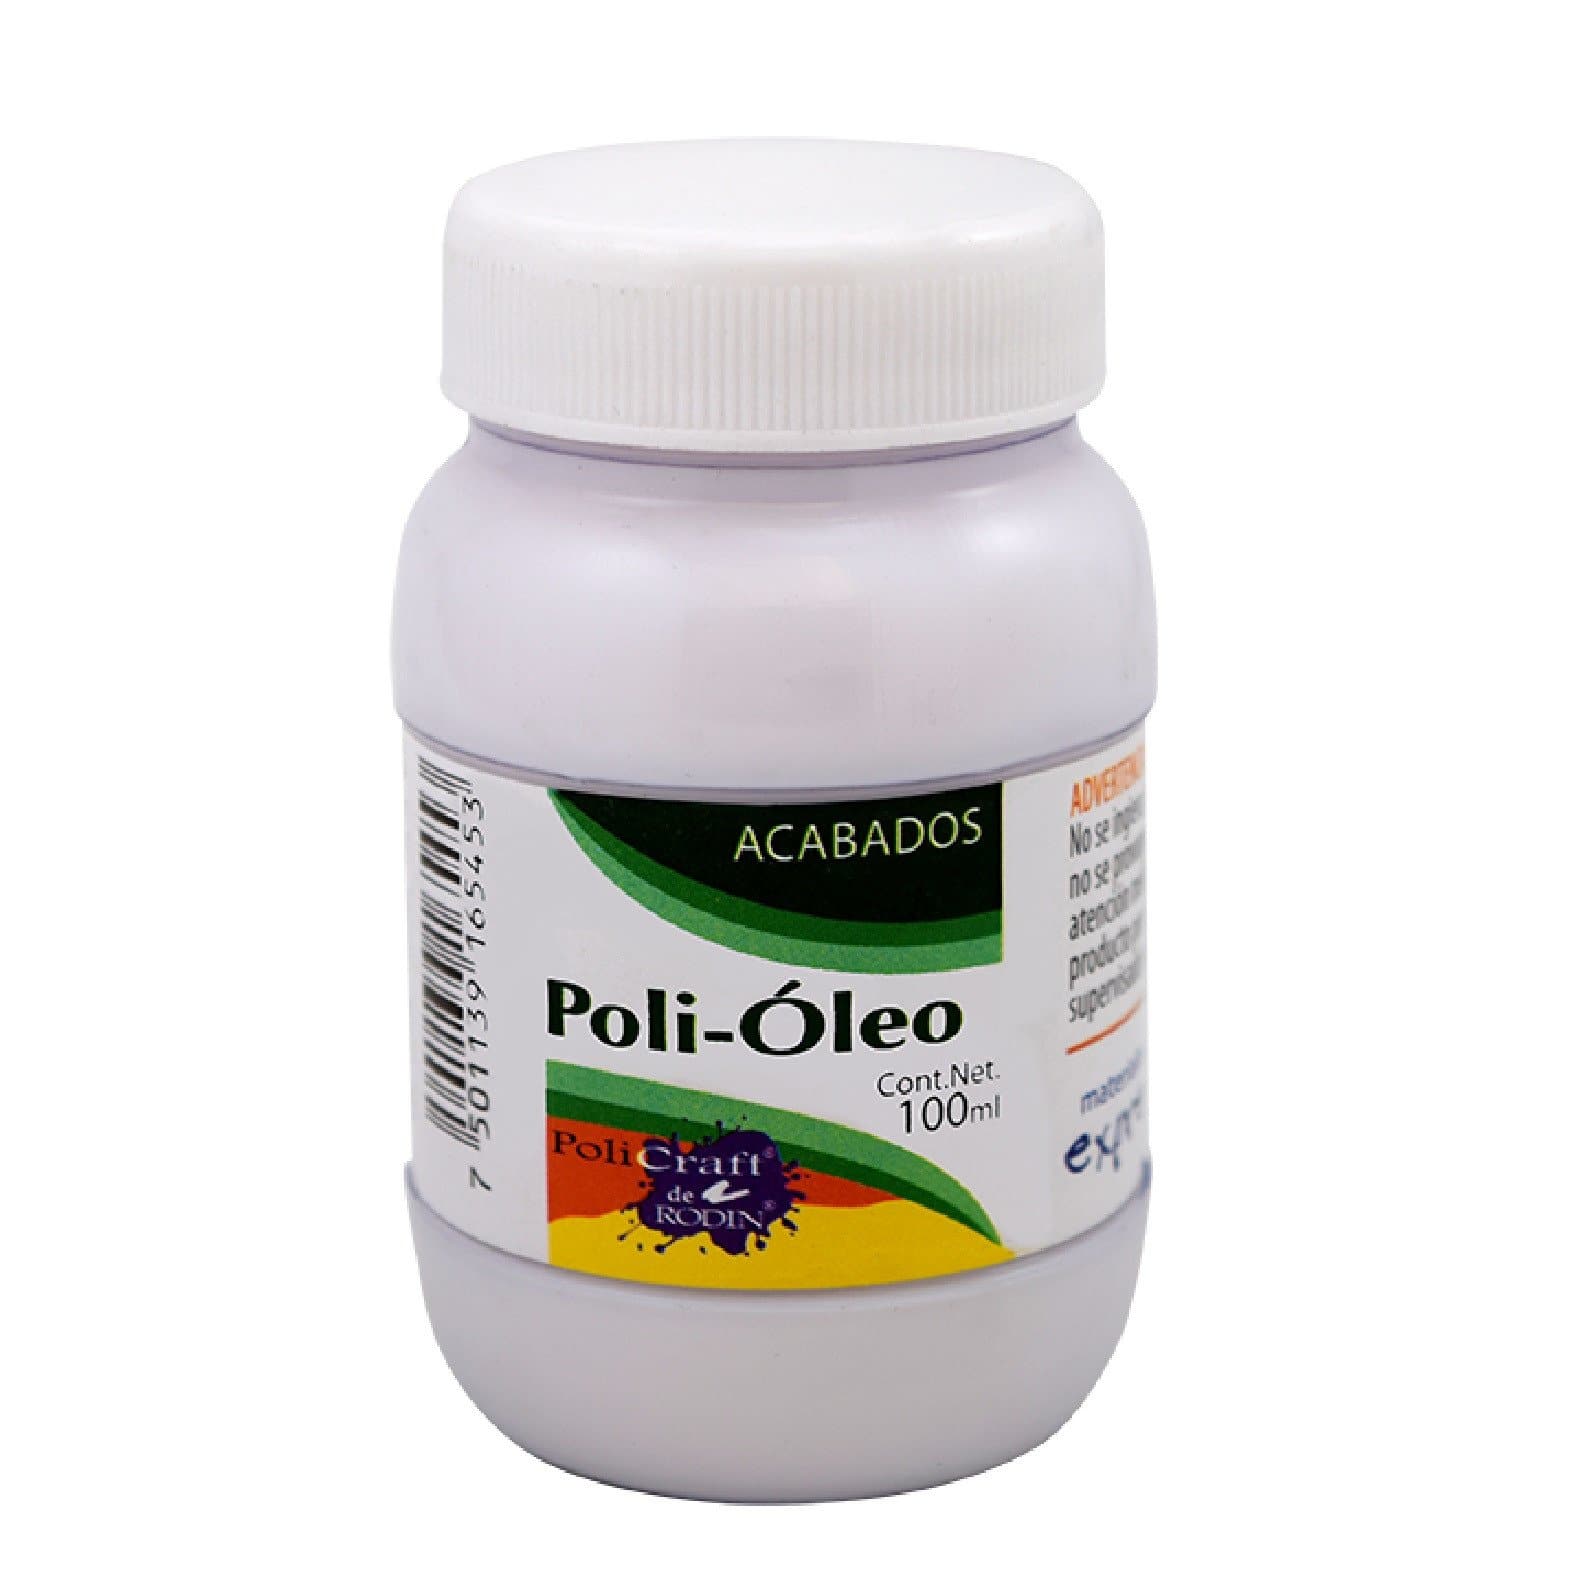 POLICRAFT - Poli óleo 100 ml